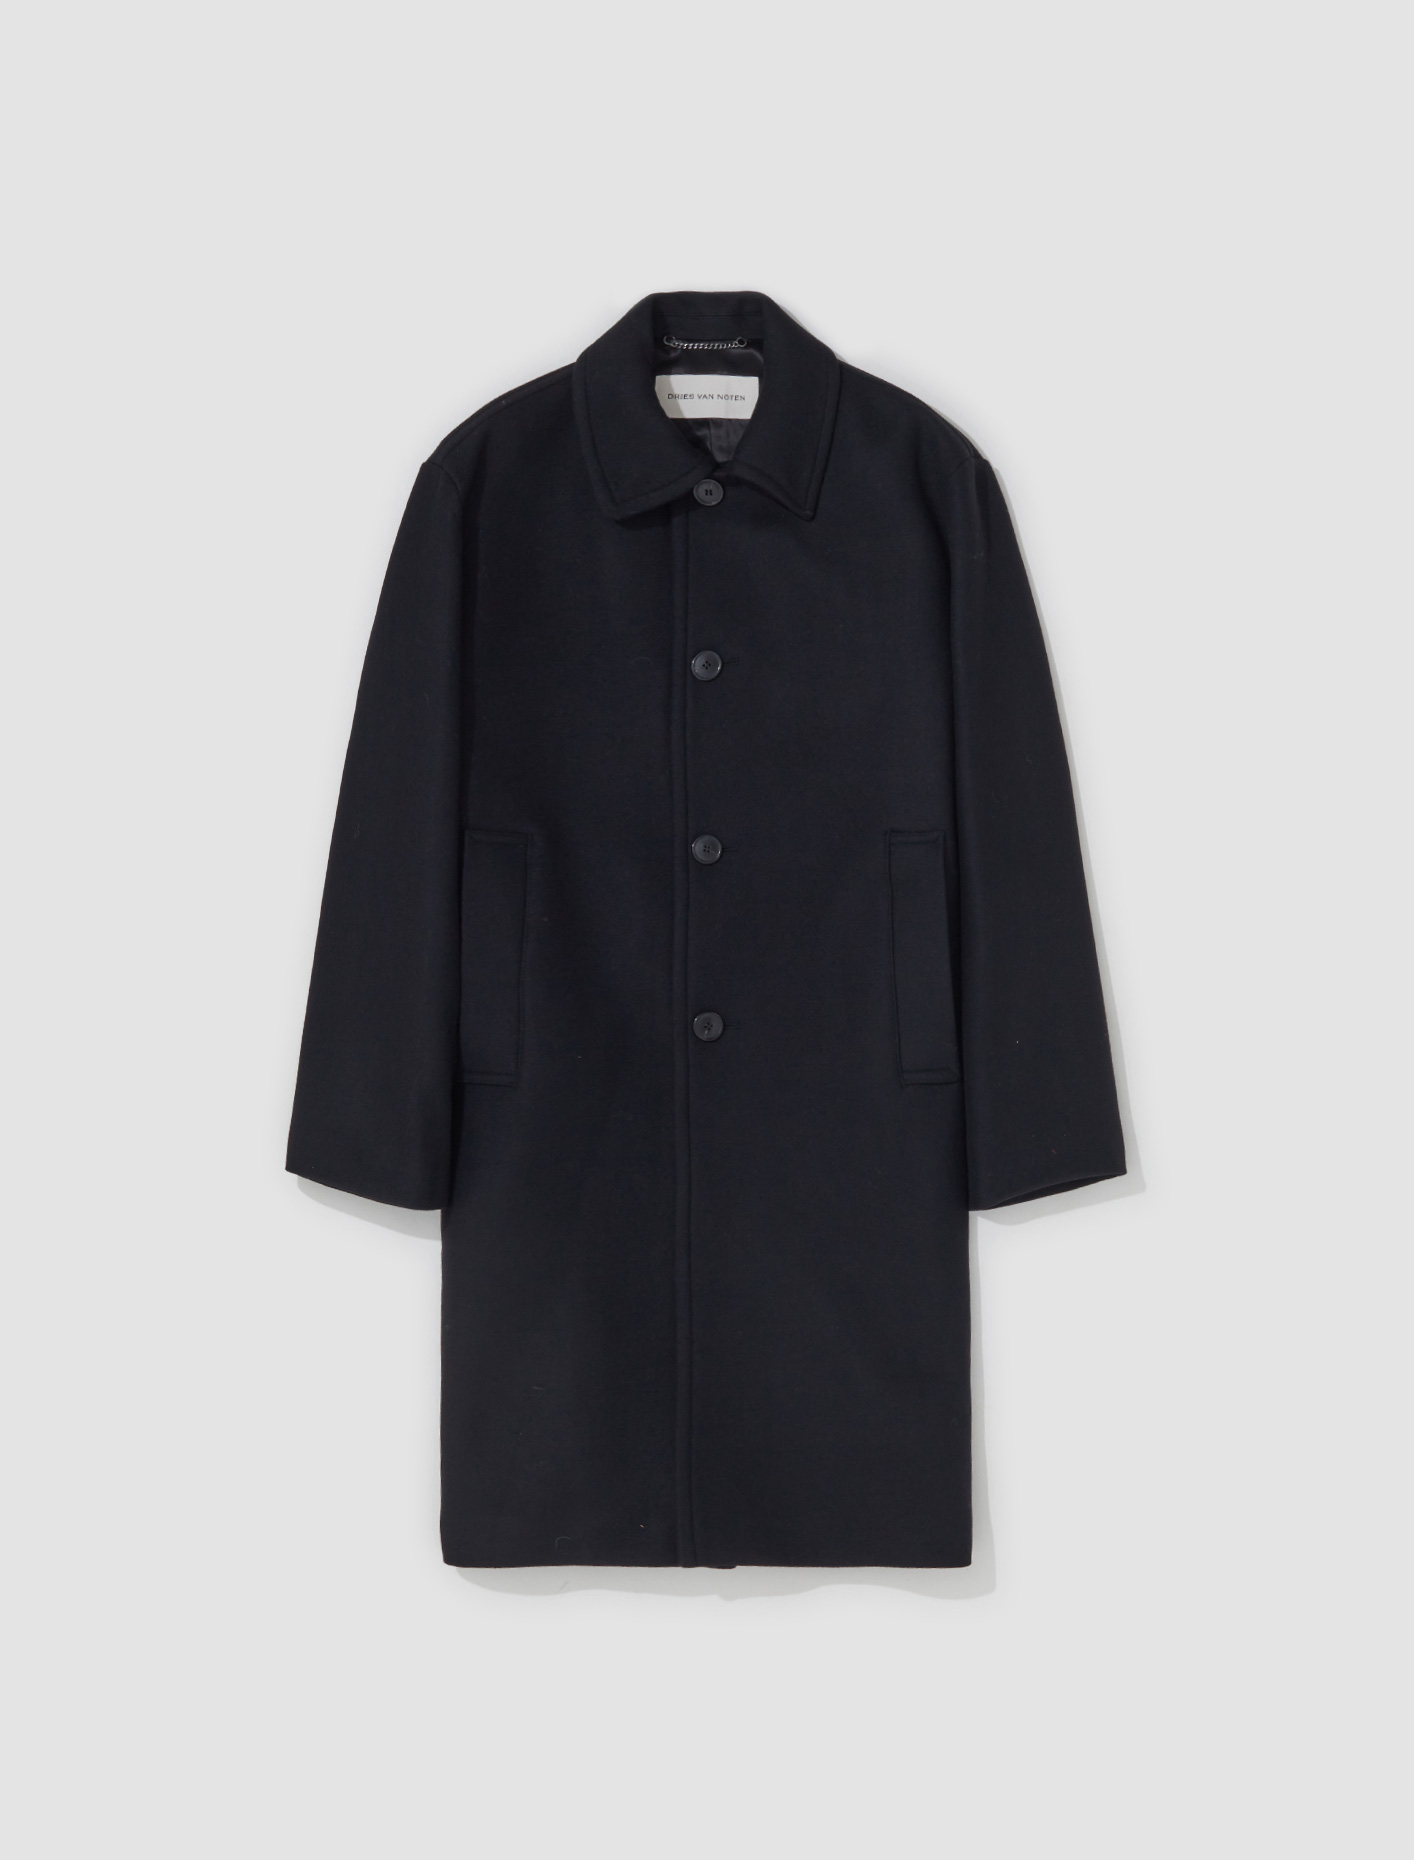 Dries Van Noten Oversized Coat in Black | Voo Store Berlin